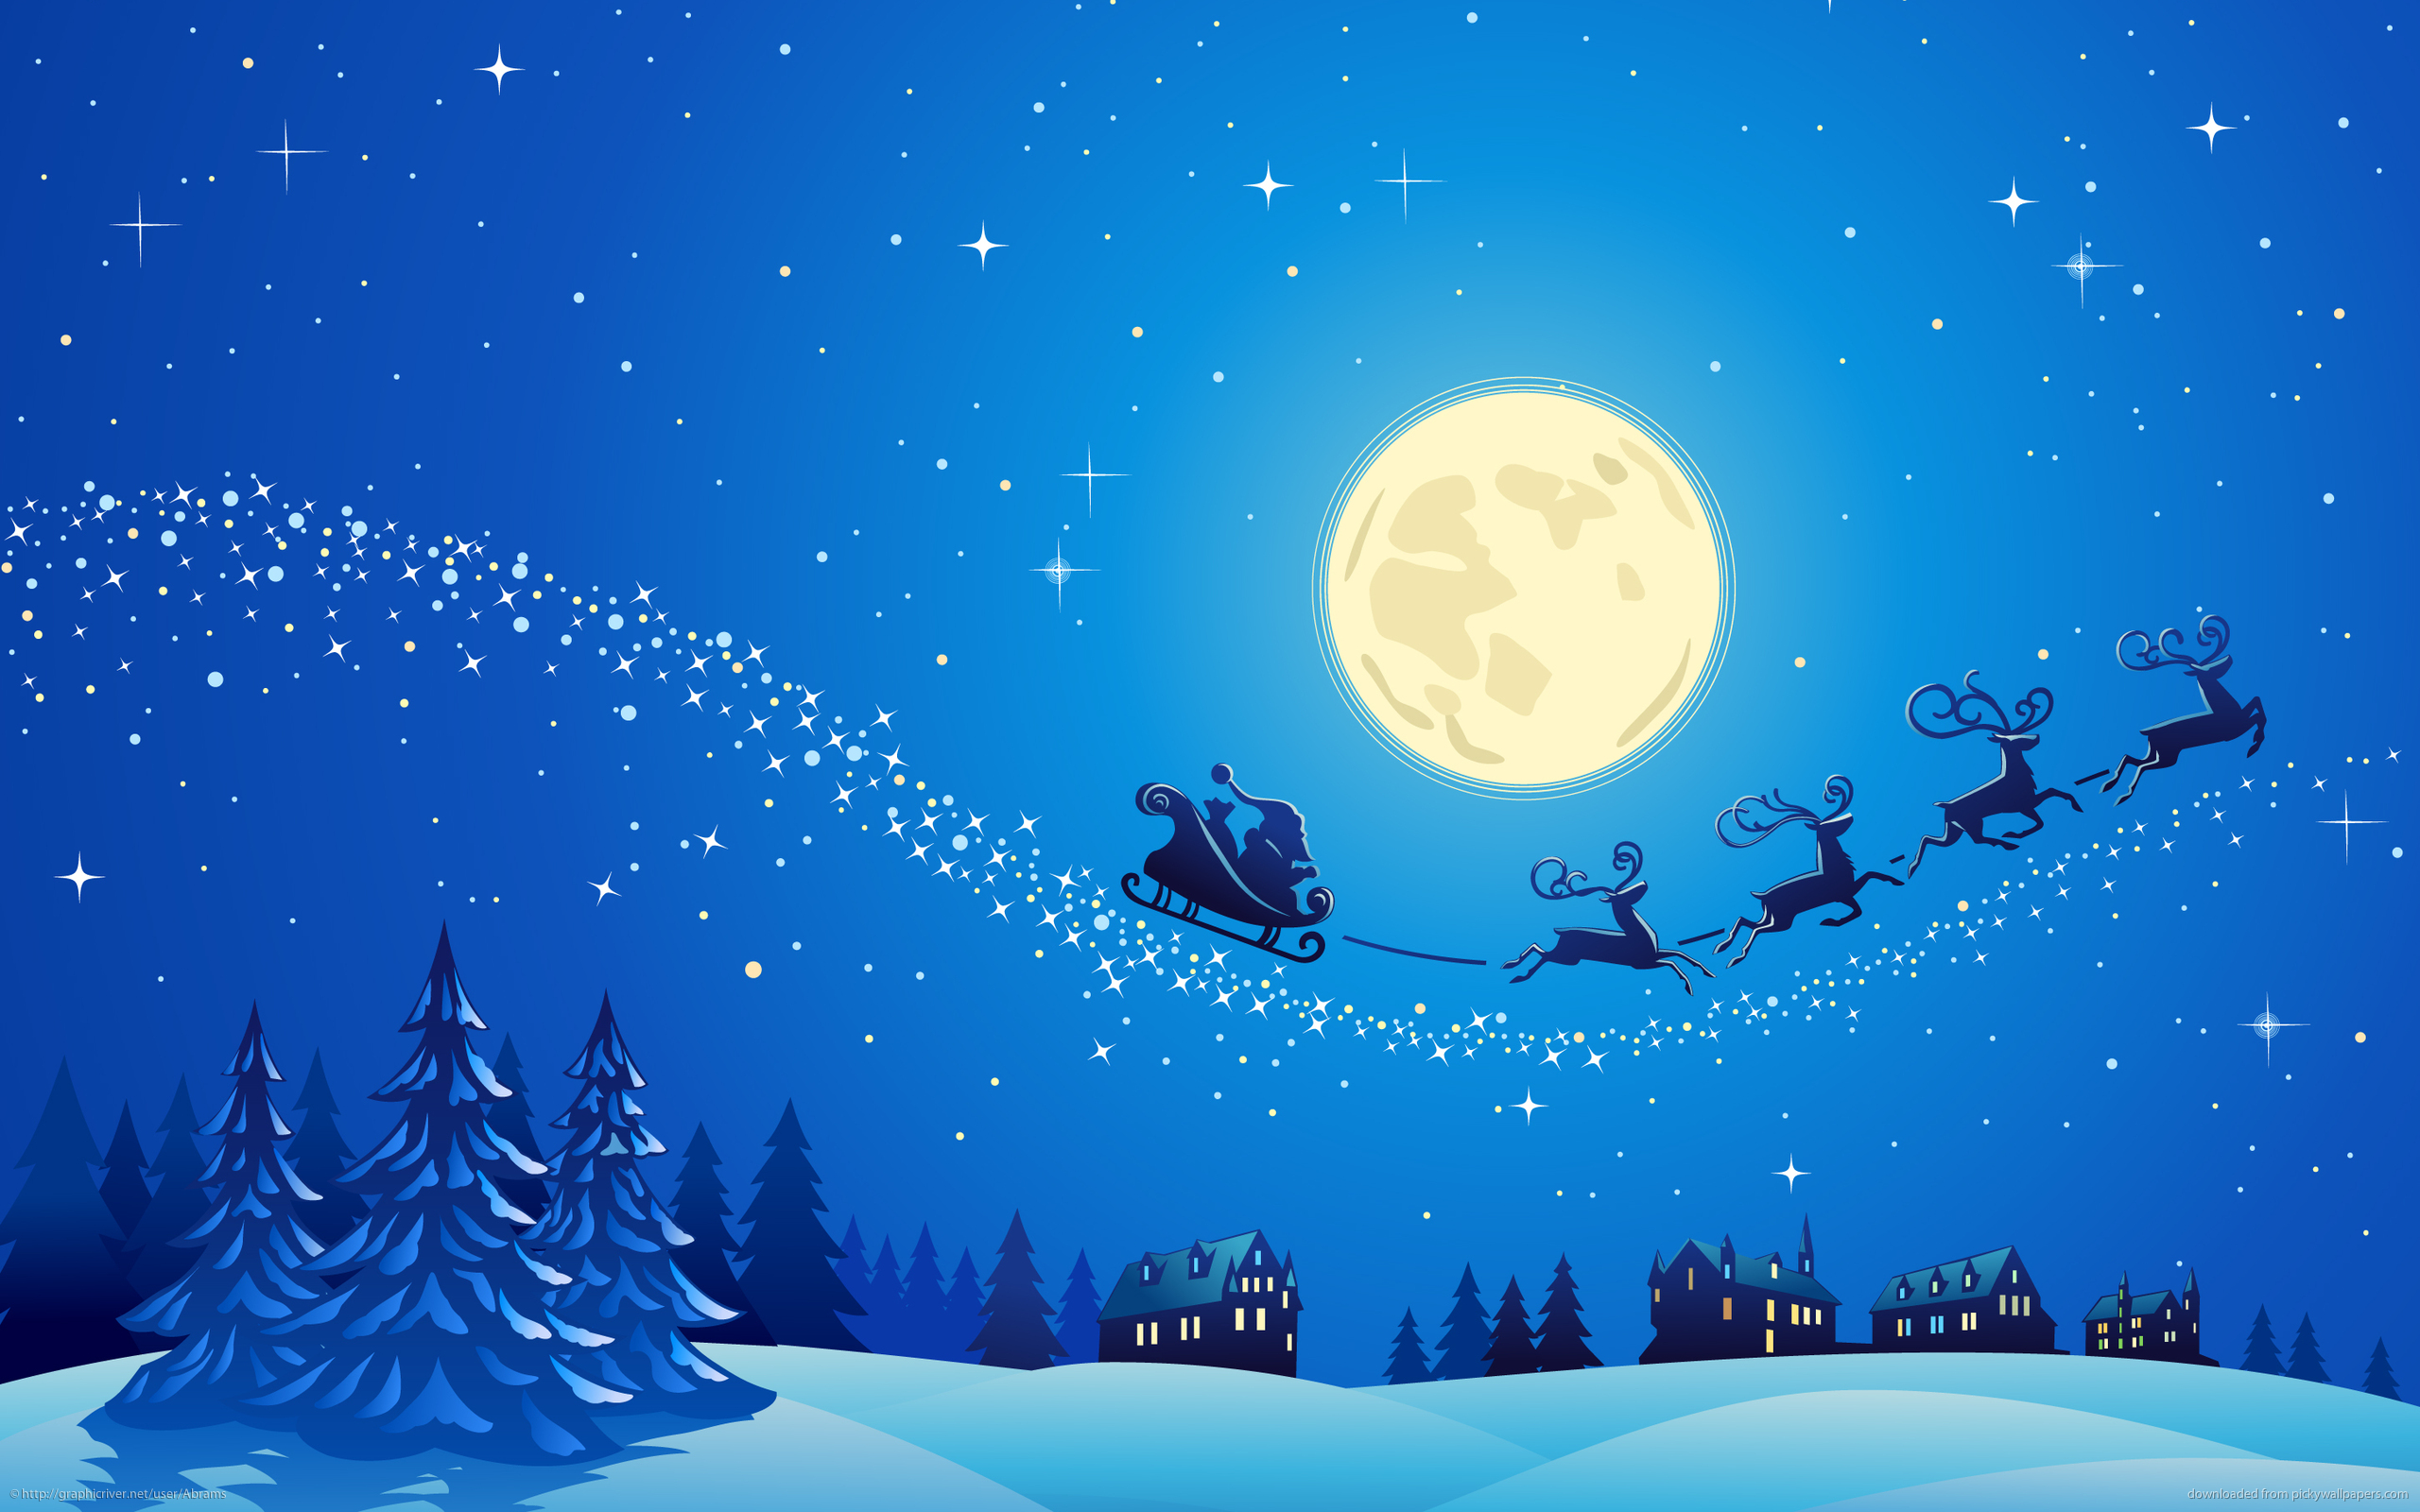 Free download Christmas Eve Santa Claus Raindeer Sleigh Moon Desktop